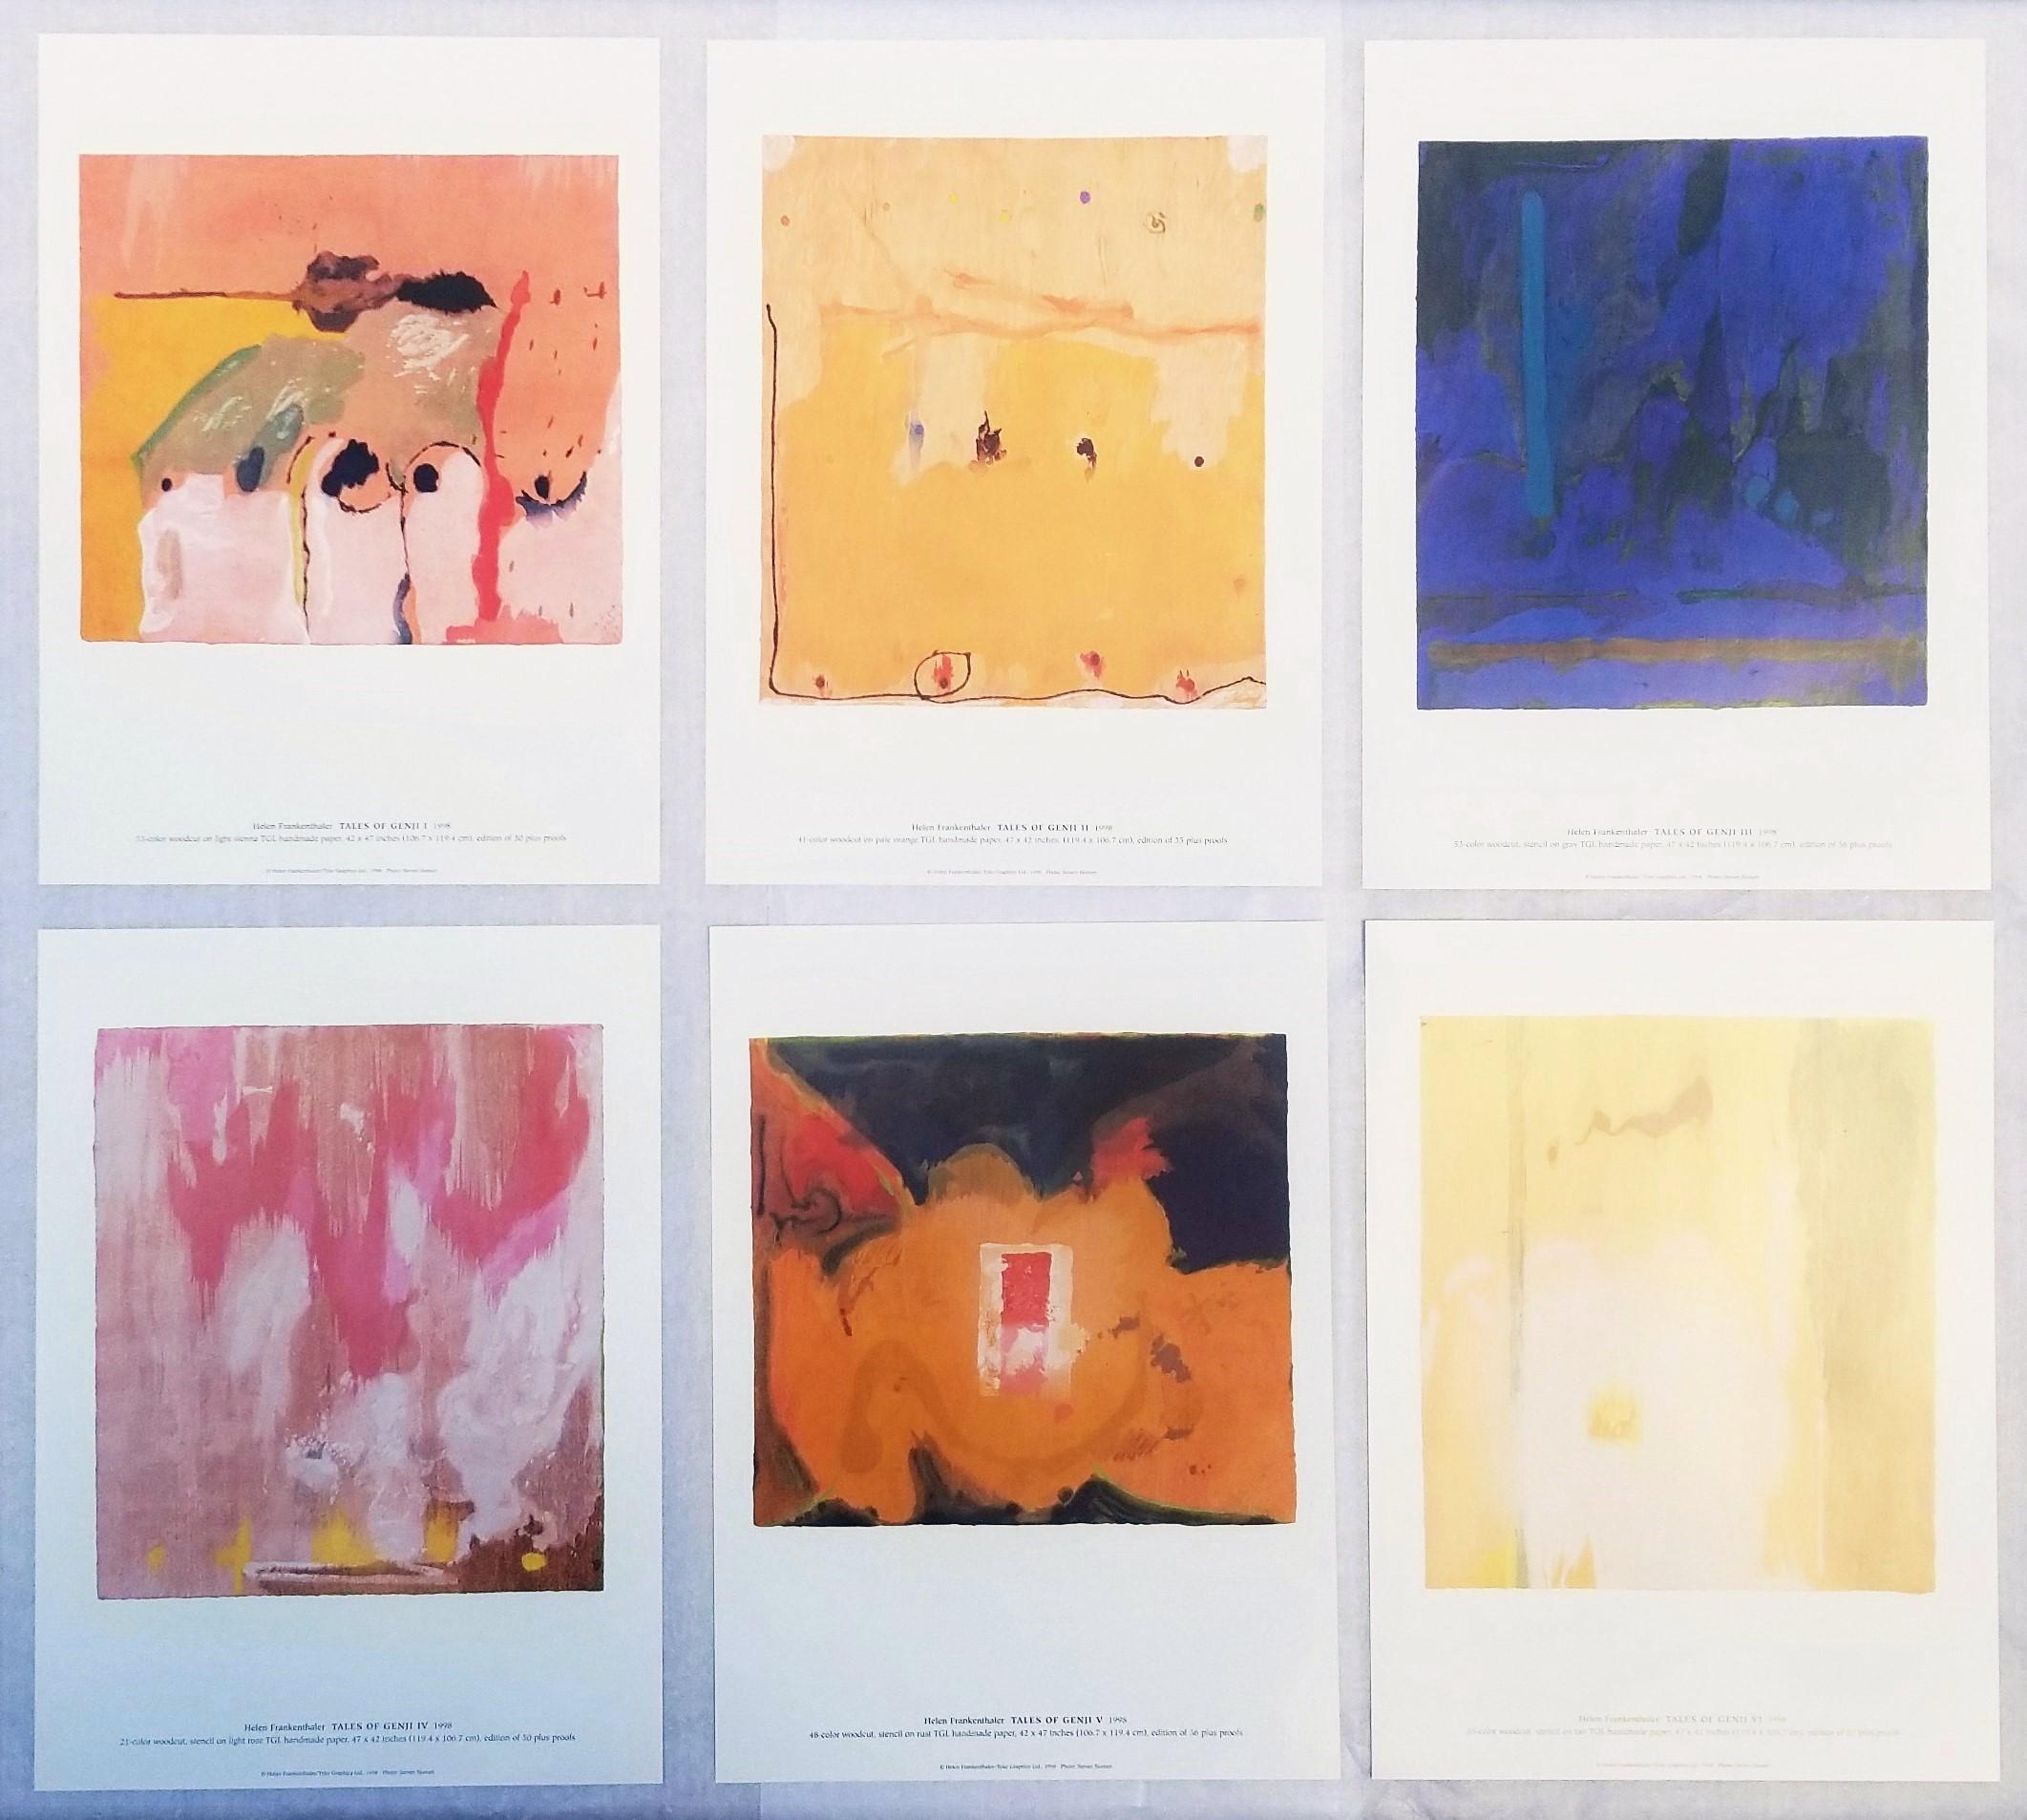 Artistics : (d'après) Helen Frankenthaler (américaine, 1928-2011)
Titre : "Helen Frankenthaler : Les Contes de Genji (Catalogue de 6 estampes)"
Série : (après) Les Contes de Genji
*Issued unsigned
Année : 1998
Support : L'ensemble complet de 6